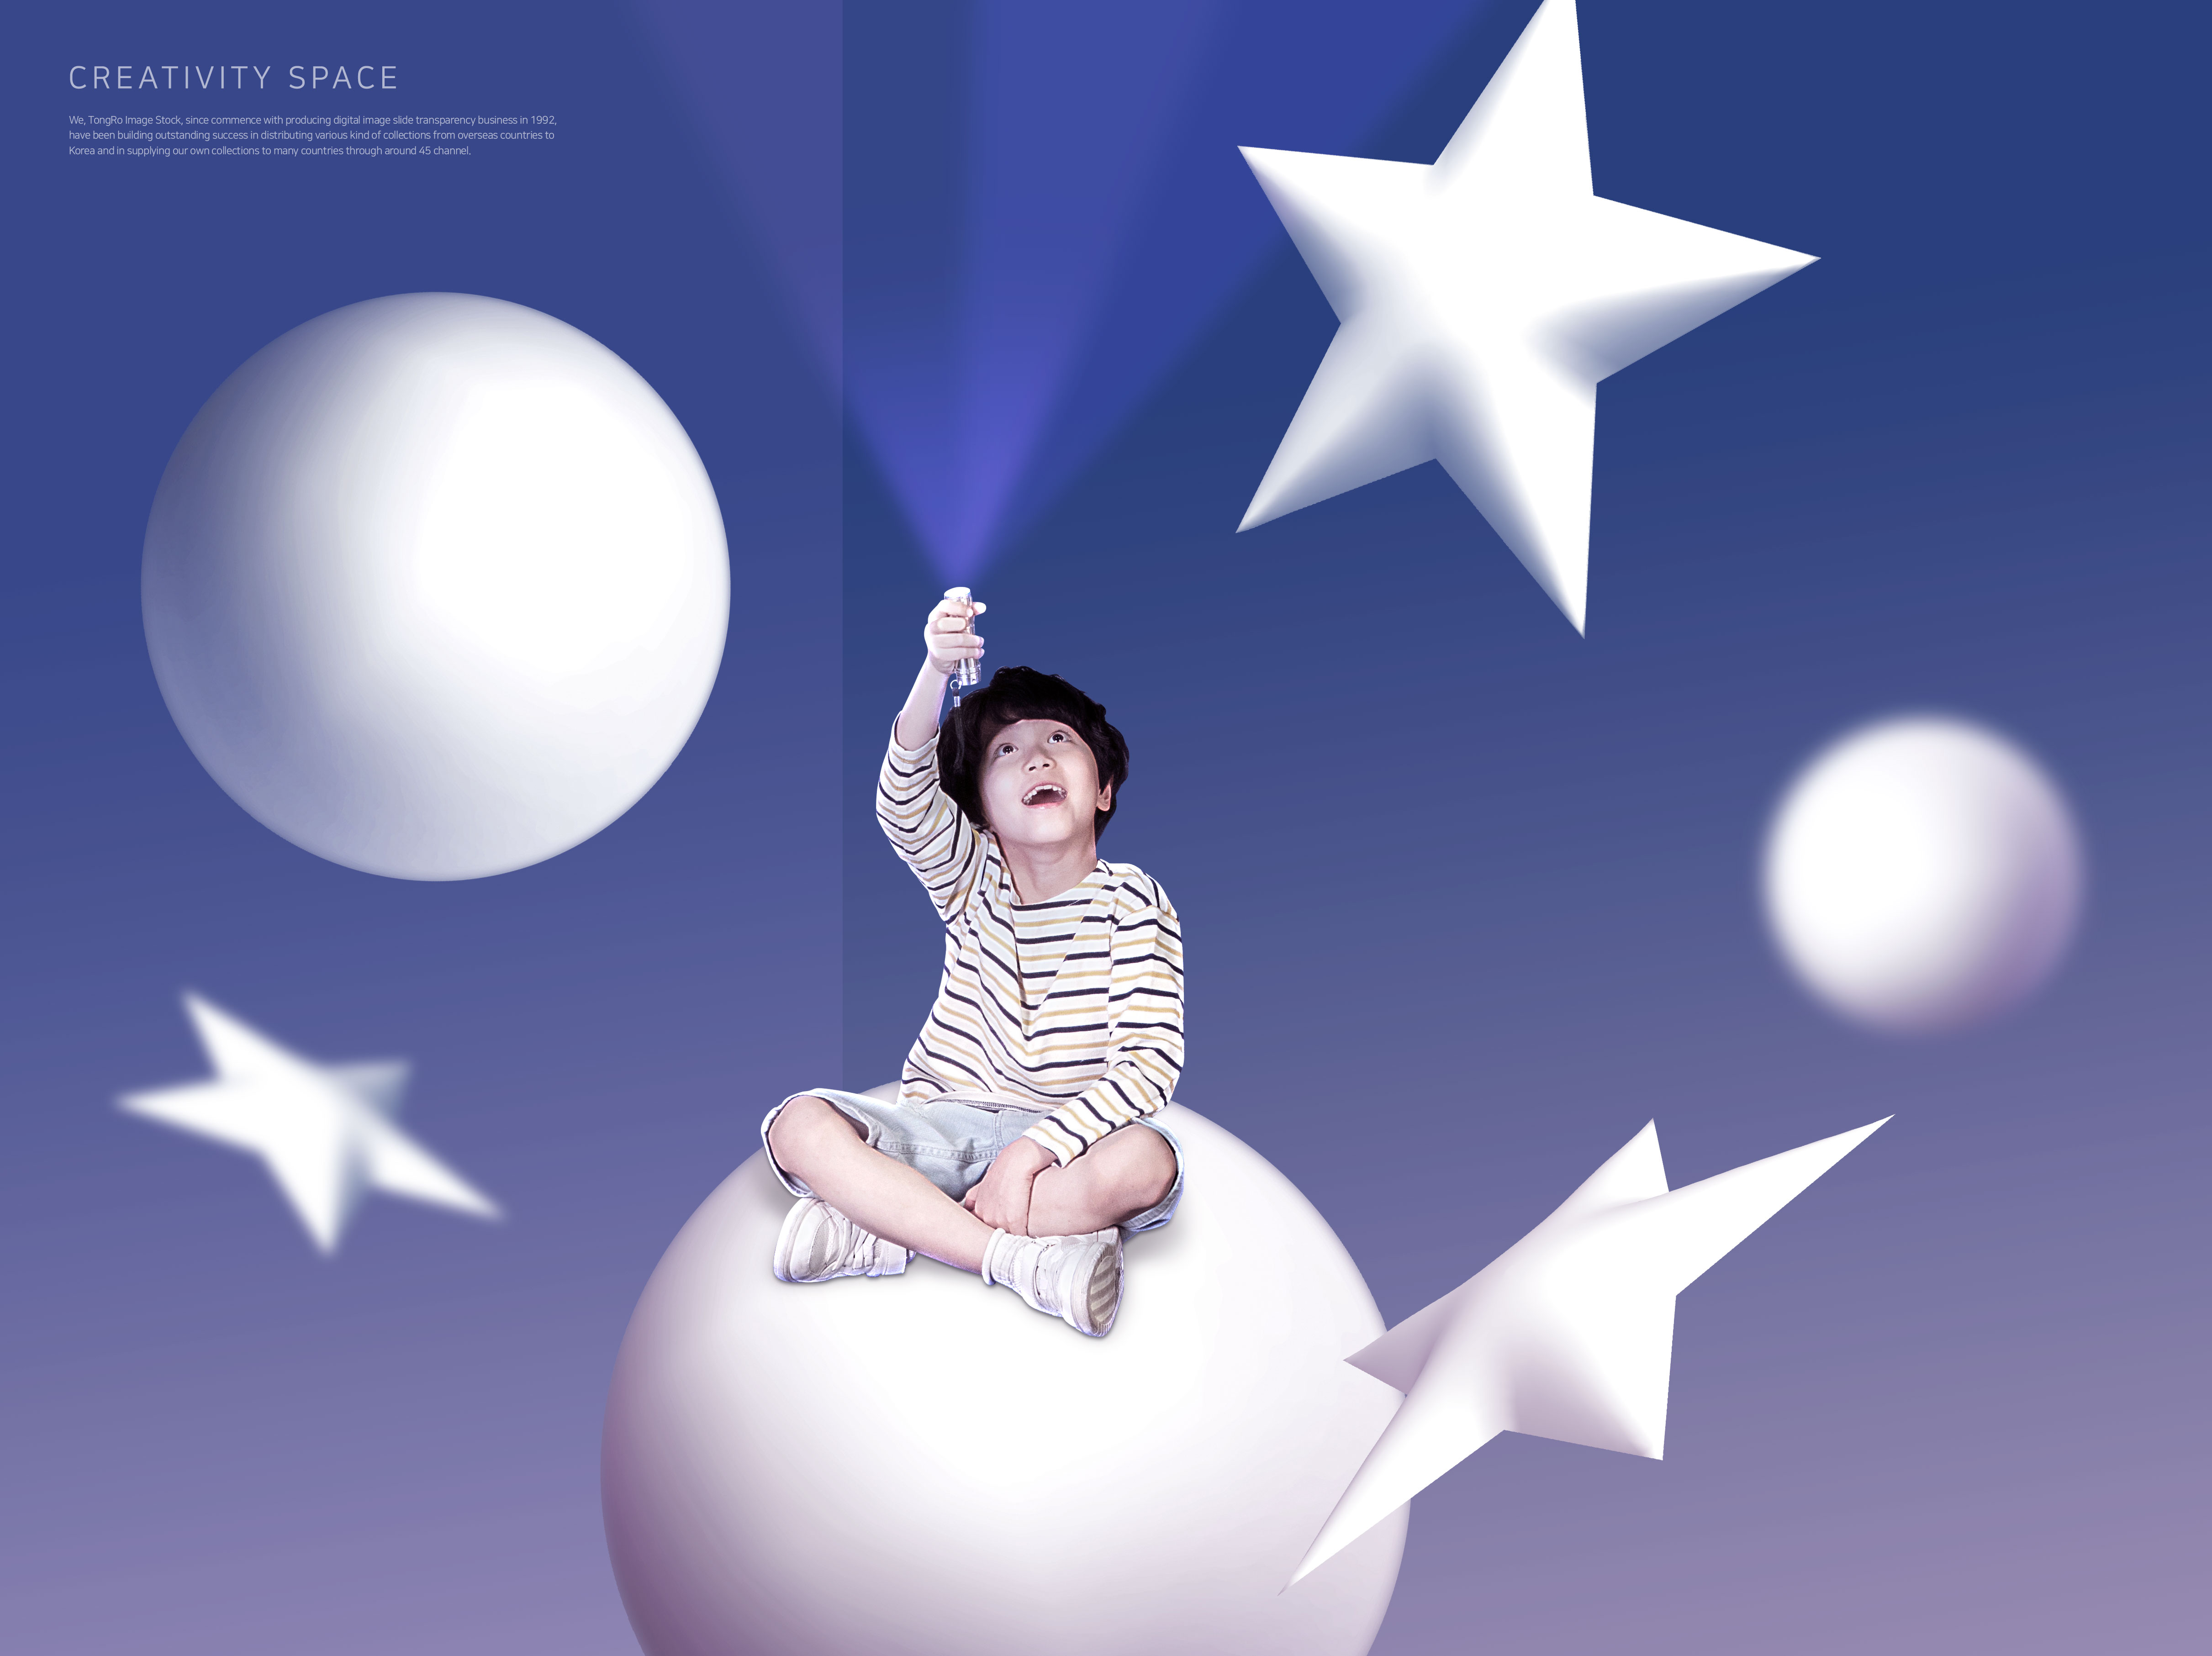 创意空间儿童晚安主题海报设计素材插图